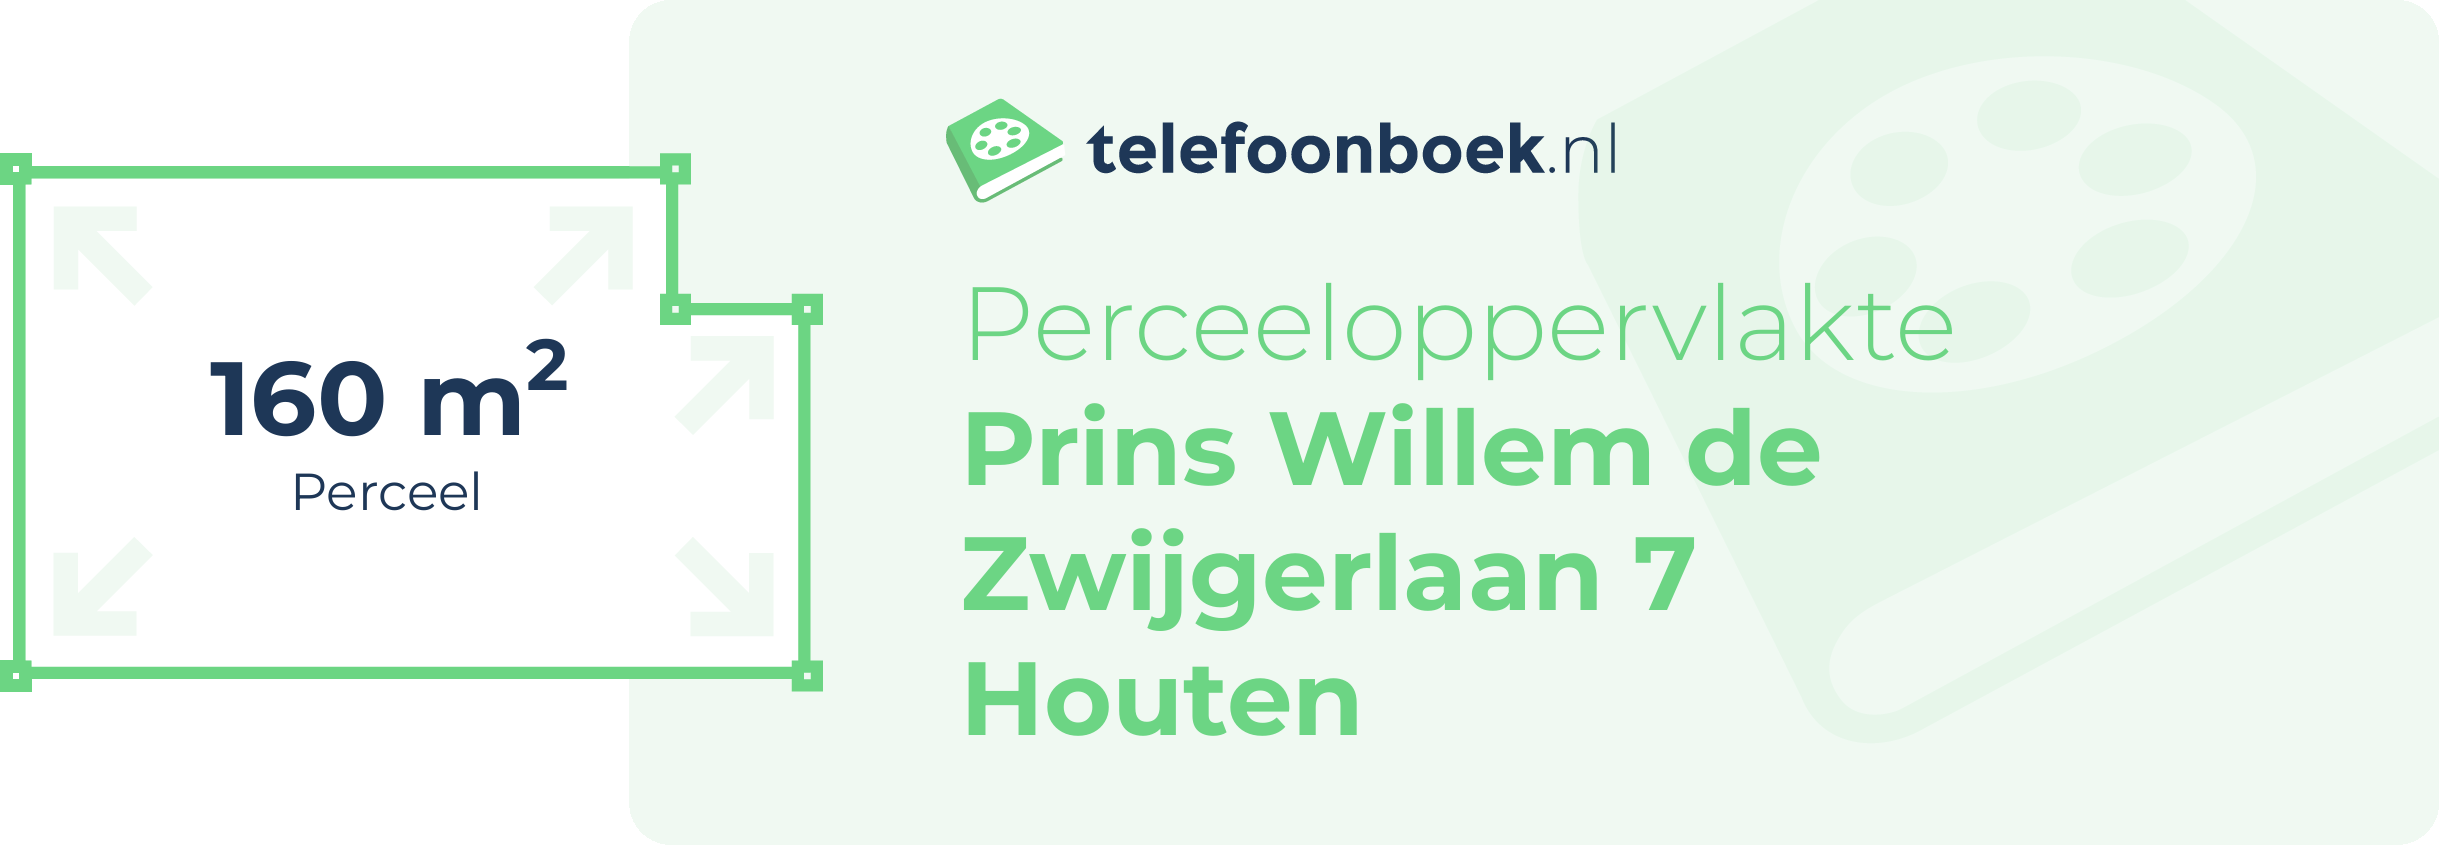 Perceeloppervlakte Prins Willem De Zwijgerlaan 7 Houten